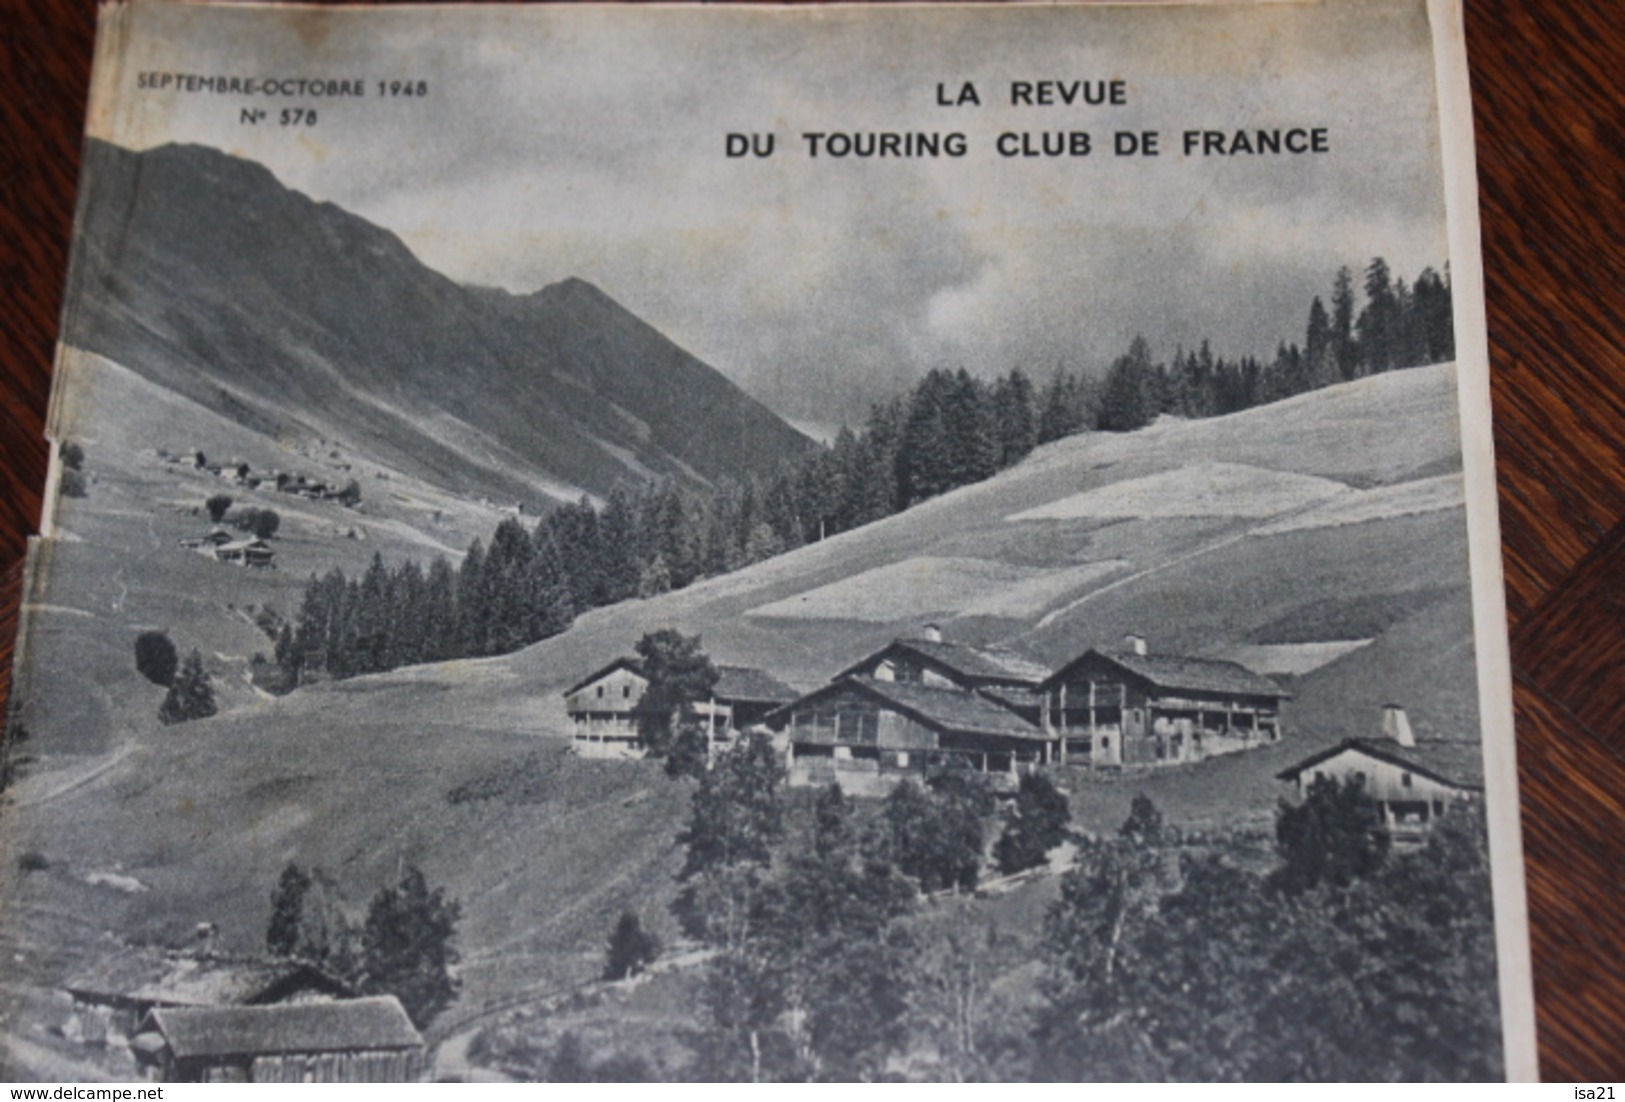 La Revue Du Touring Club 1948 Septembre-Octobre, Le Grand-Bornand, De Tours à Saumur, Mont Ste Odile, La 4cv Renault - 1900 - 1949